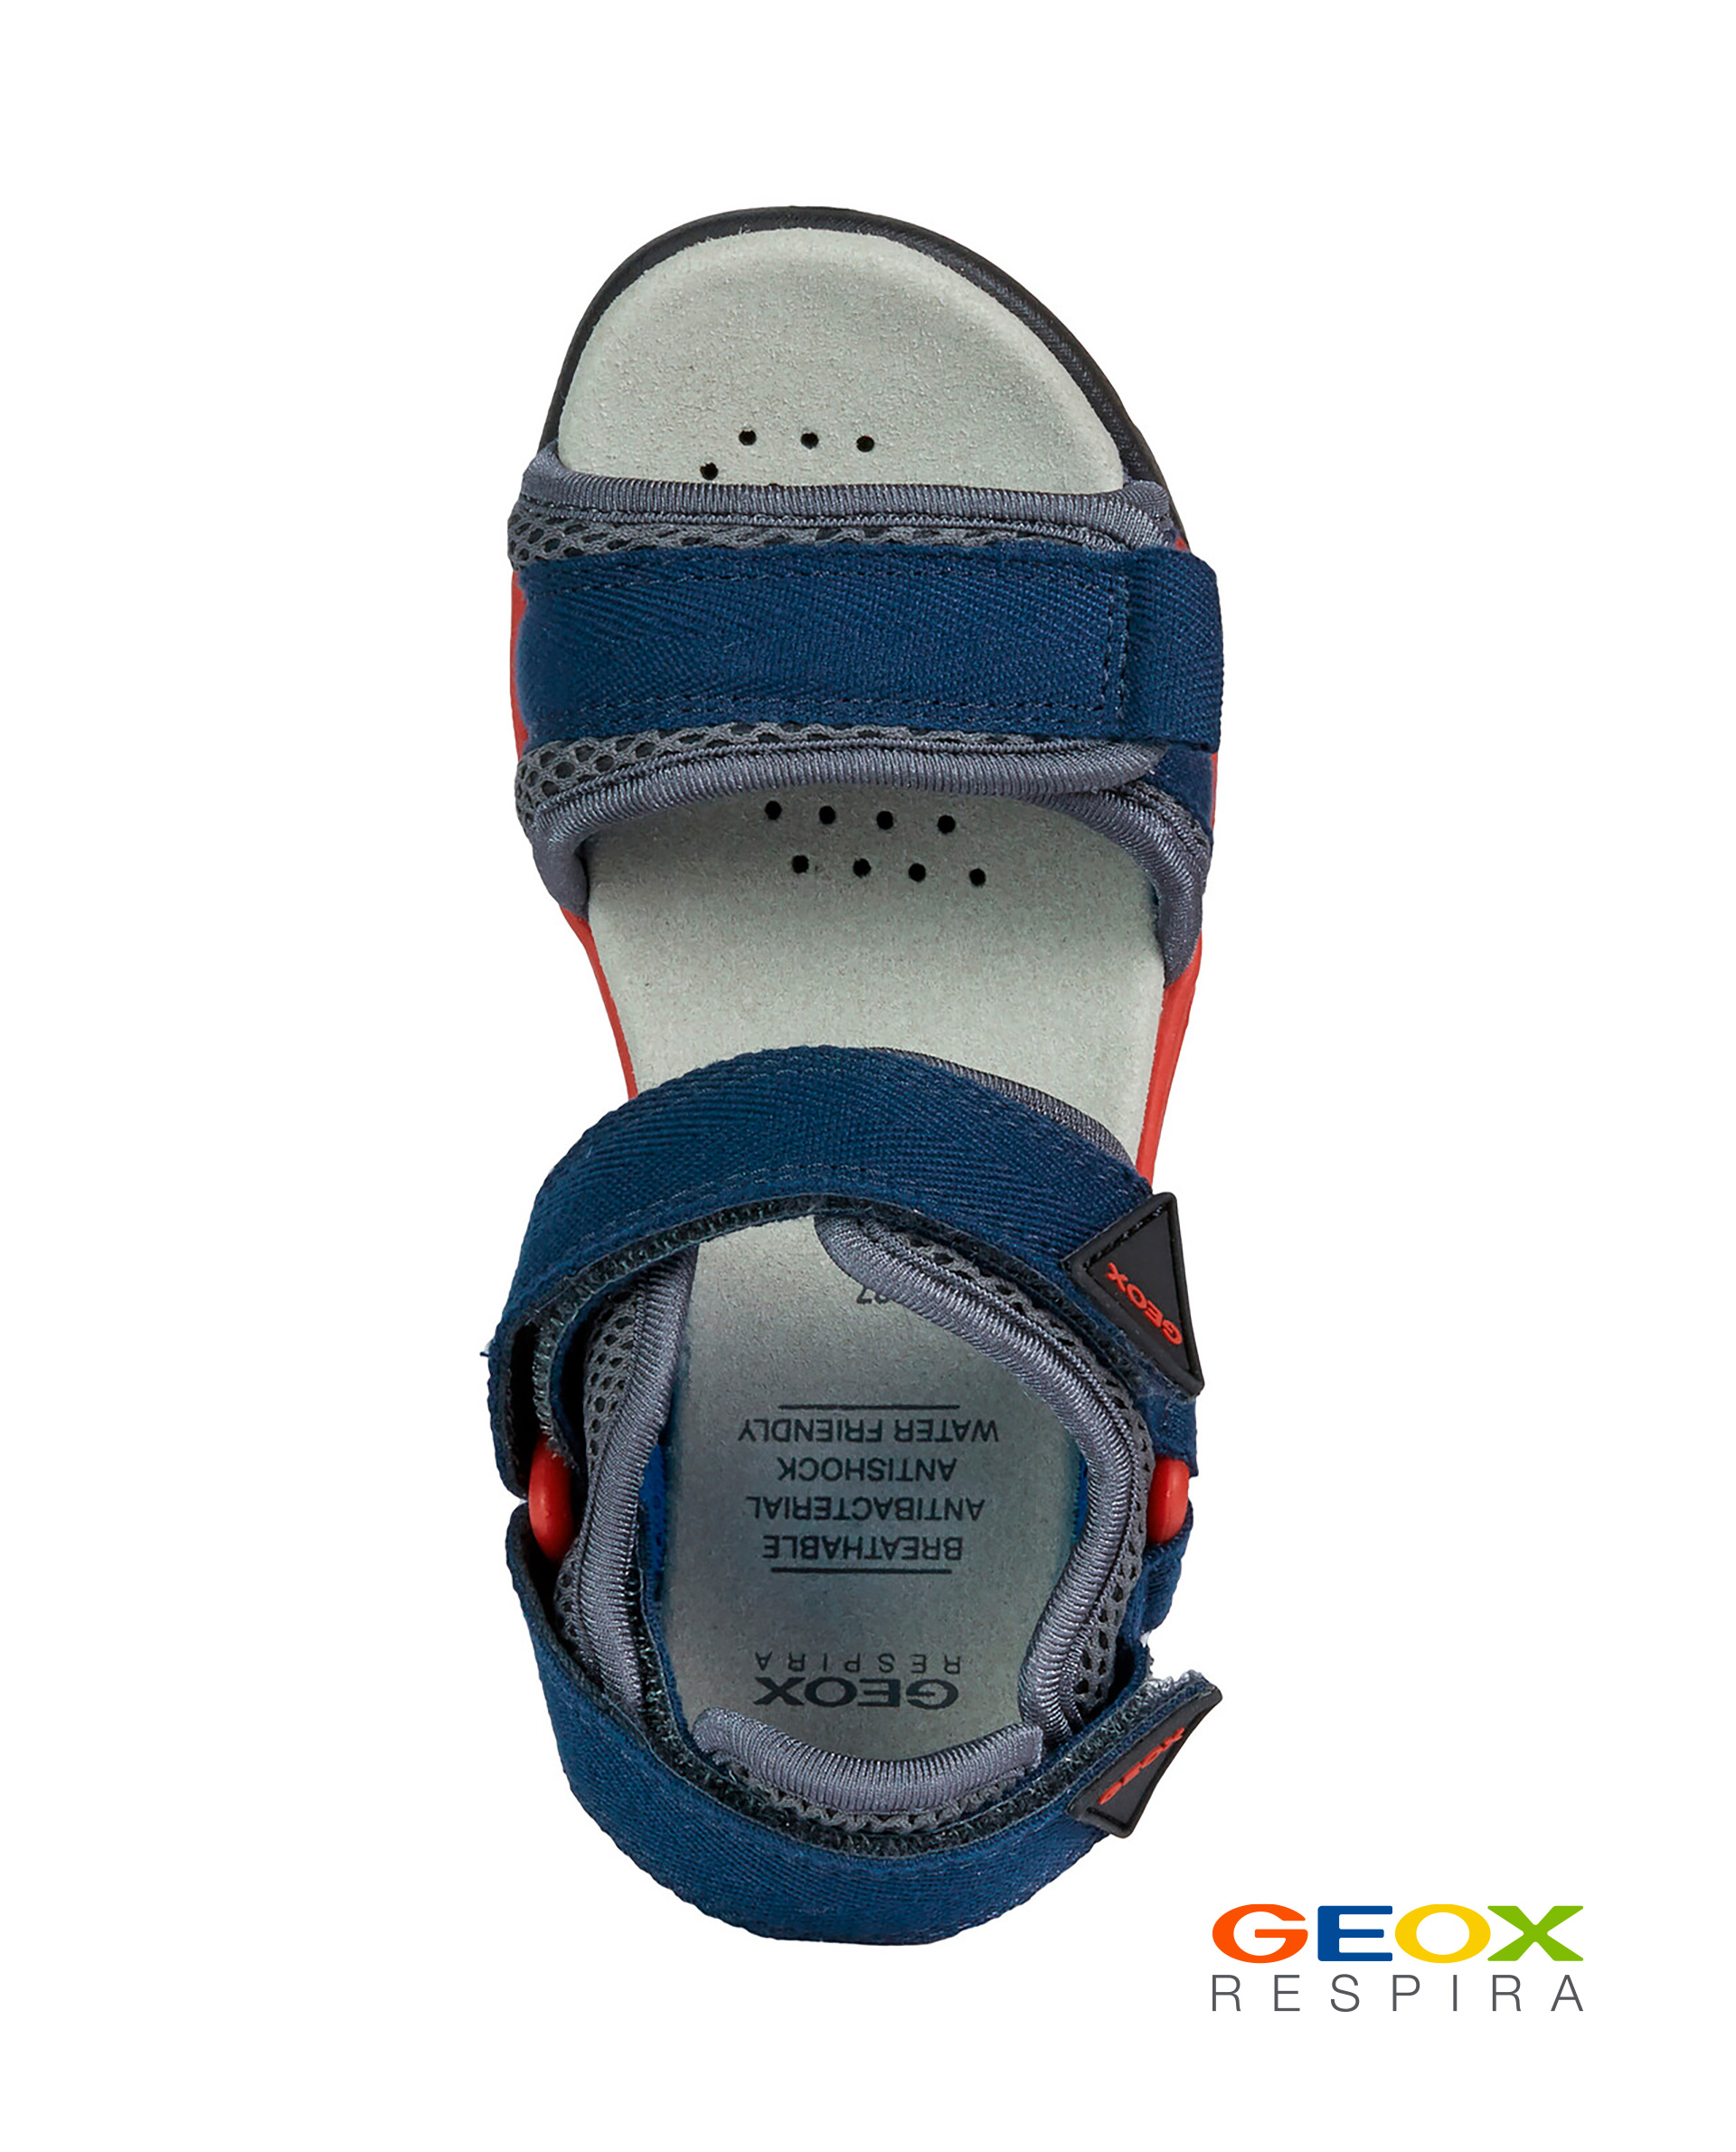 Синие сандалии Geox для мальчика J020RC01411C0735, размер 37, цвет синий - фото 4